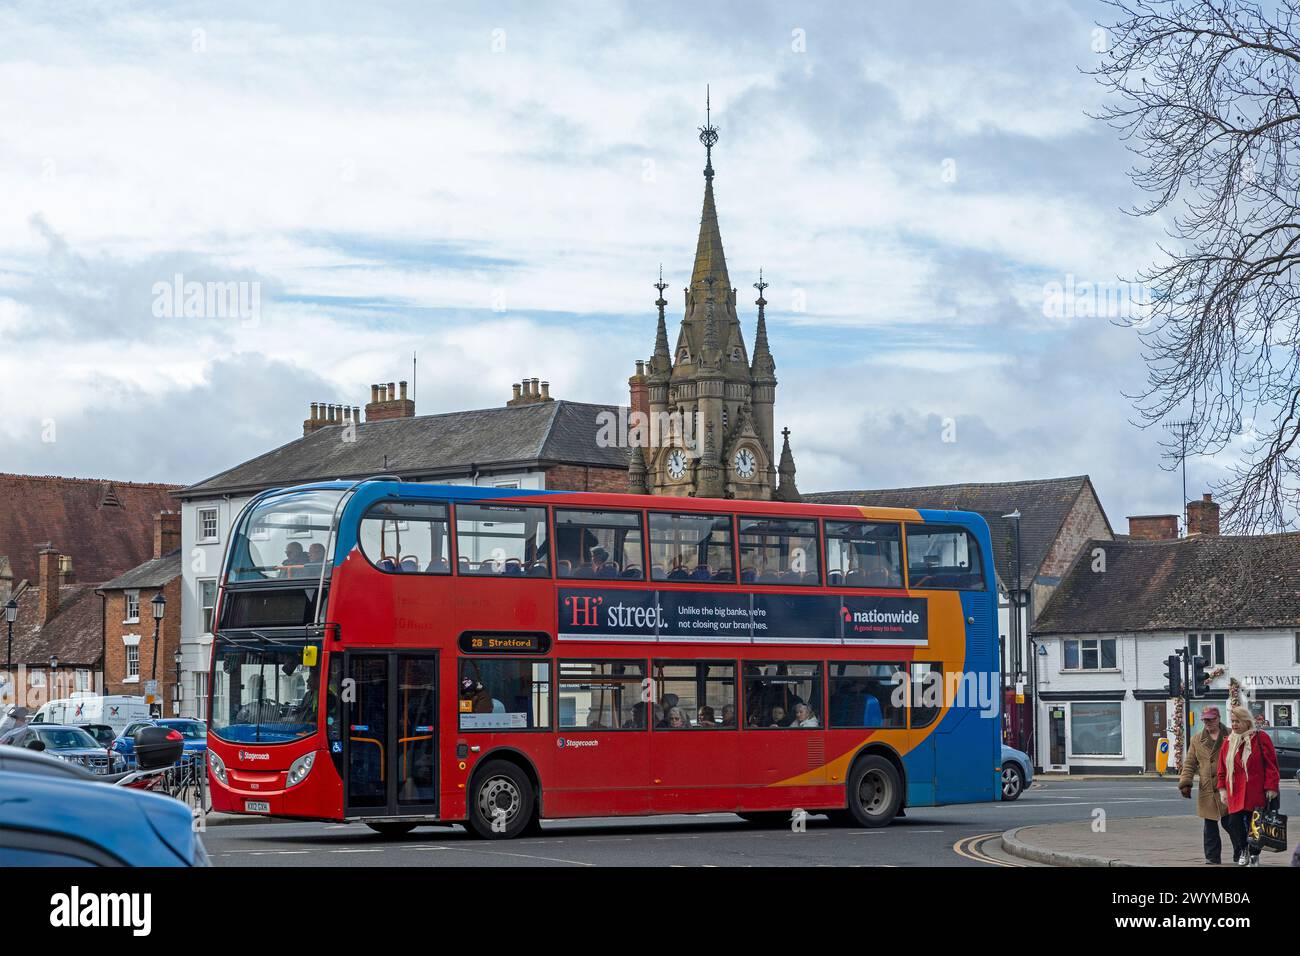 Autobus a due piani, torre dell'orologio, Stratford Upon Avon, Inghilterra, Gran Bretagna Foto Stock